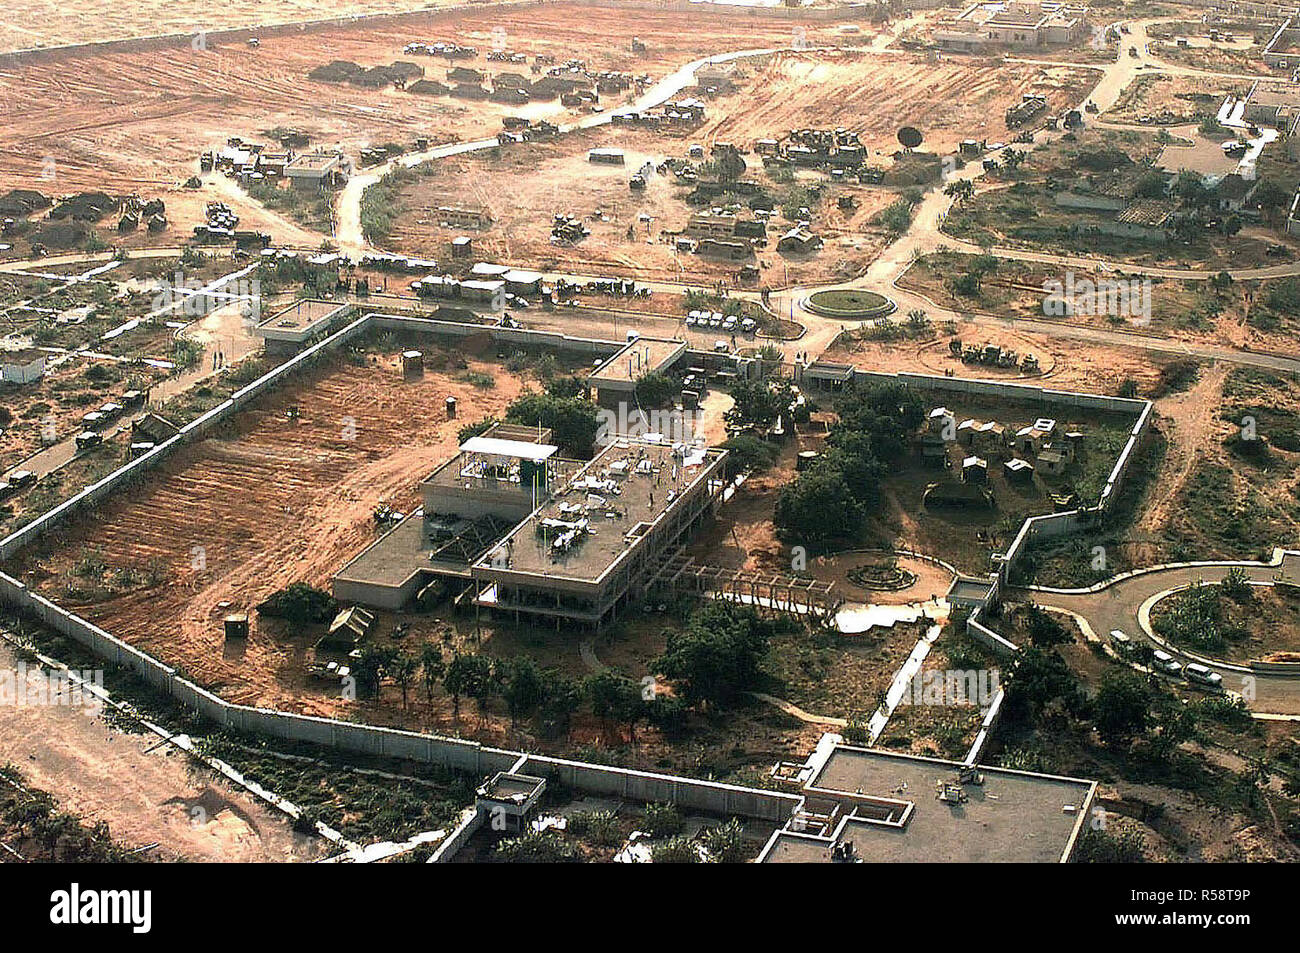 Vue aérienne de la partie gauche de l'ambassade américaine à Mogadiscio, en Somalie. Le quartier général de la Force opérationnelle interarmées pour restaurer l'espoir y est situé. Il est prévu de construire une ville de tentes sur le composé. Plusieurs tentes et d'équipement des Nations Unies sont situés à l'extérieur des murs de l'ambassade dans le haut du cadre. Cette mission est en appui direct à l'Opération Restore Hope. Banque D'Images